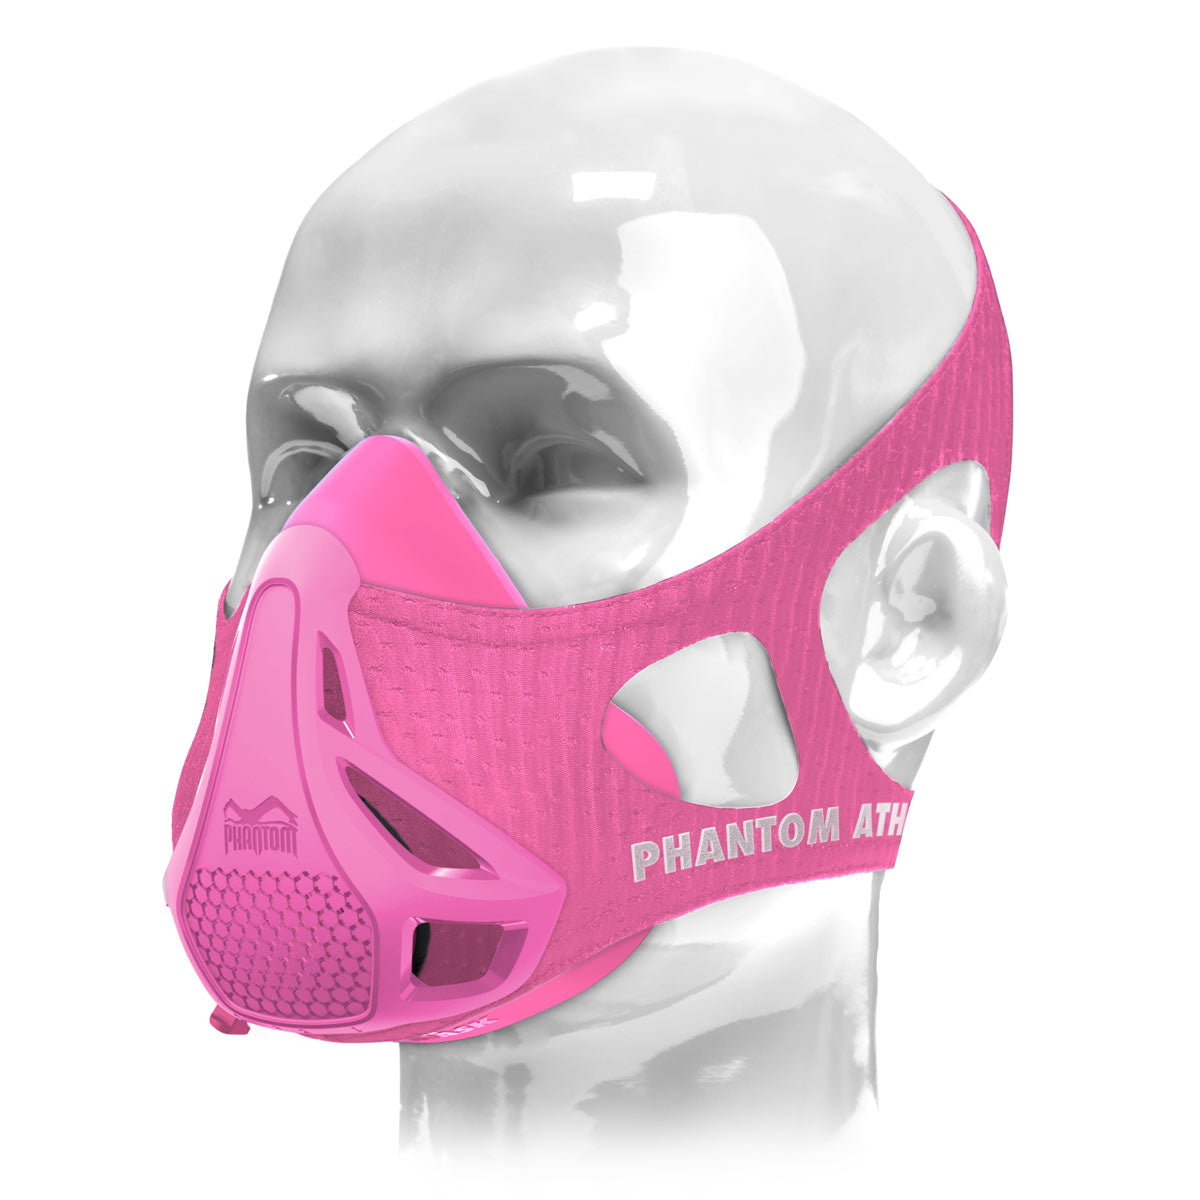 Die Phantom Trainingsmaske. Das Original. Patentiert und ausgezeichnet um deine Fitness auf das nächste Level zu heben. Jetzt auch in der Farbe Pink.